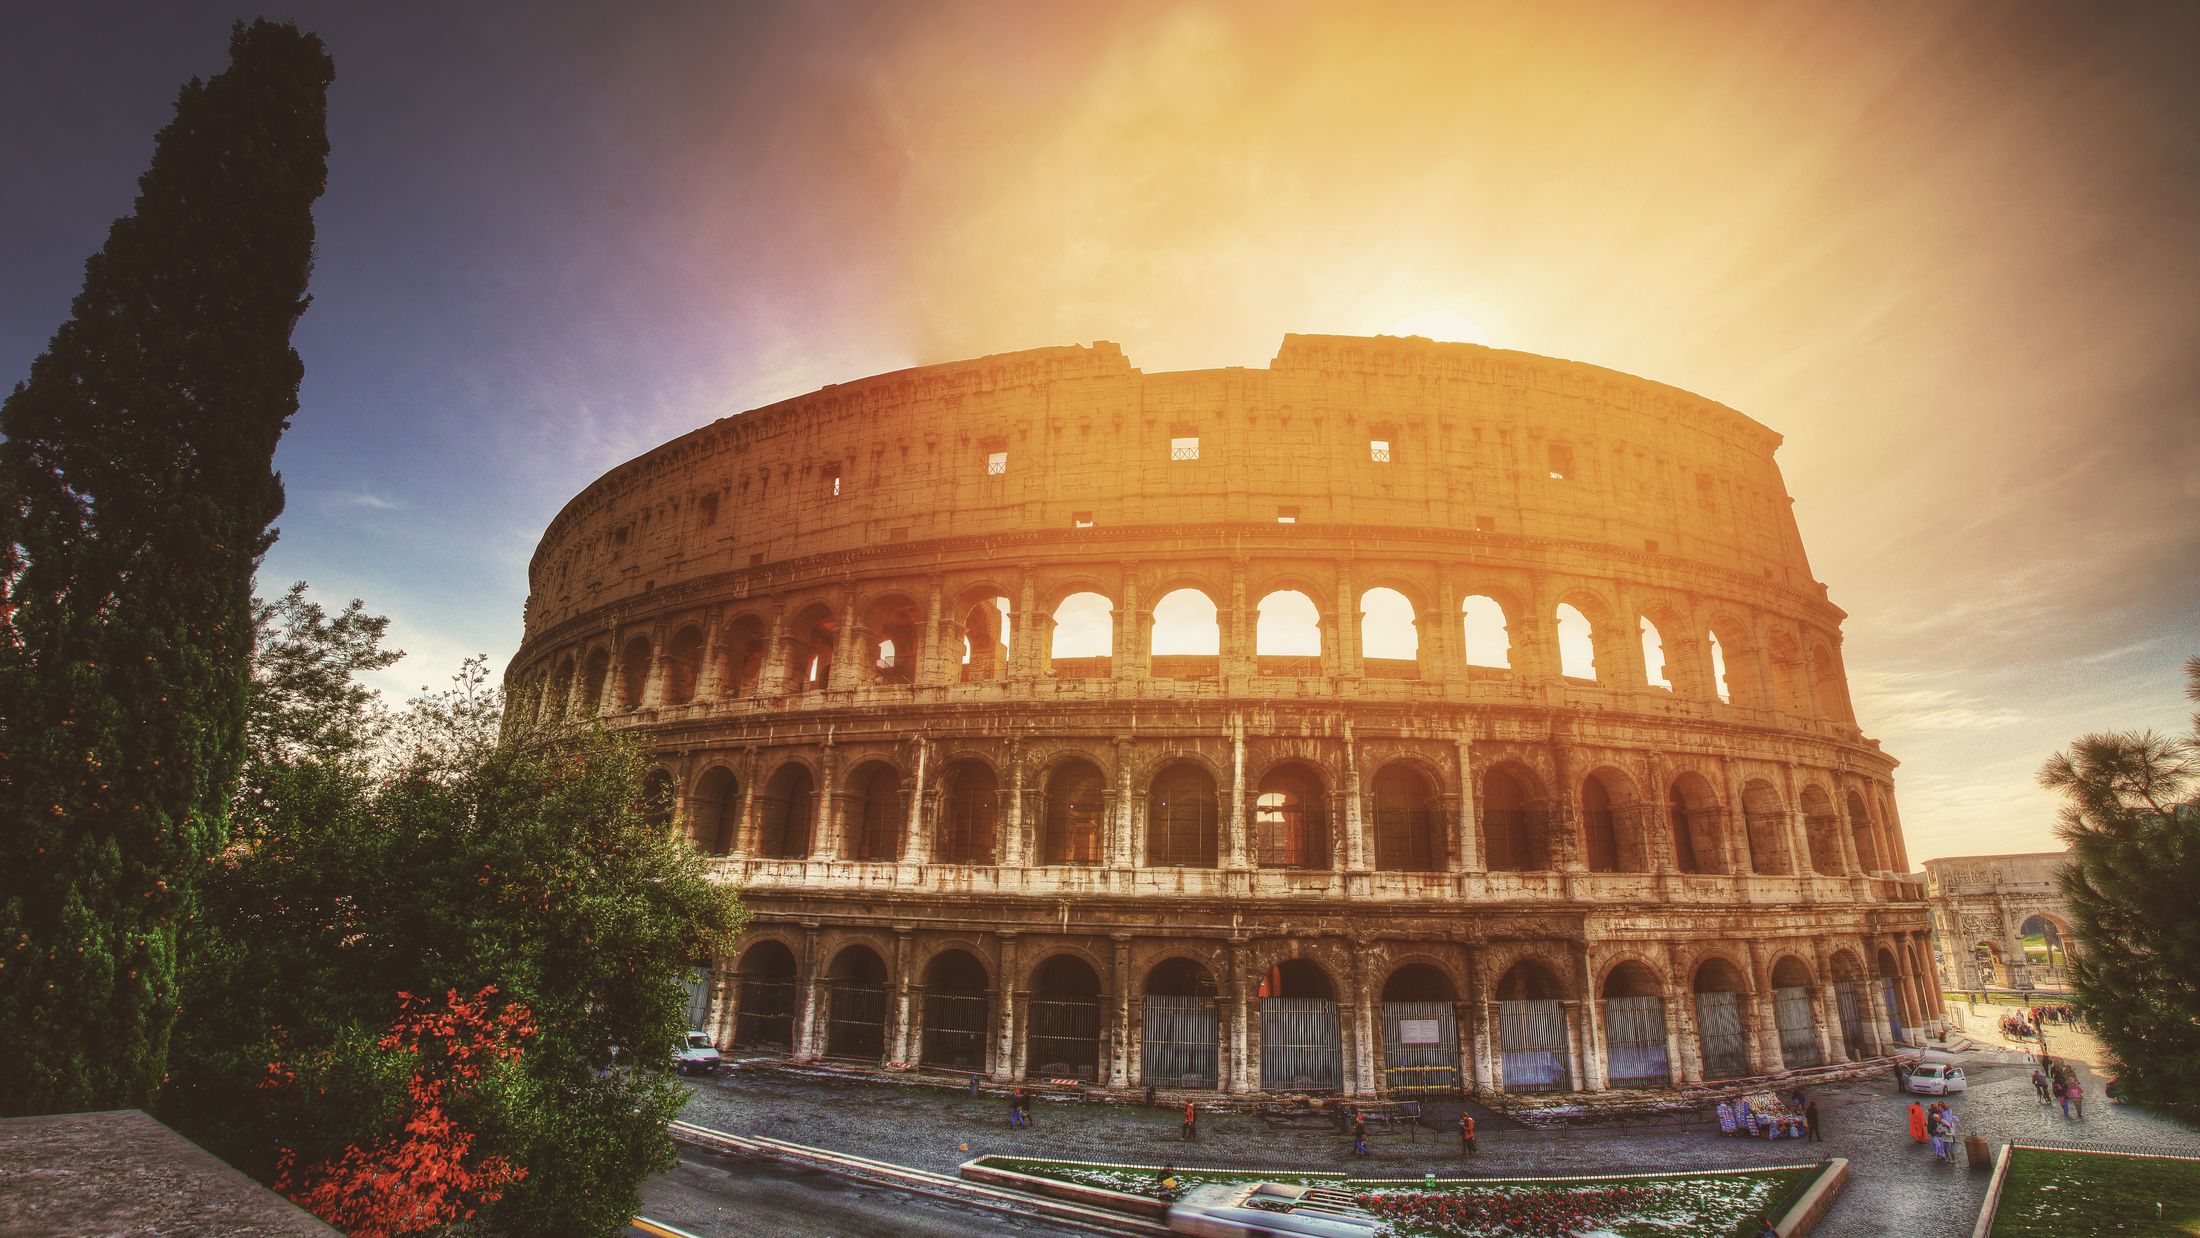 000940 Colosseum_Rome_Pixabay_no credit req_792202-Hybris